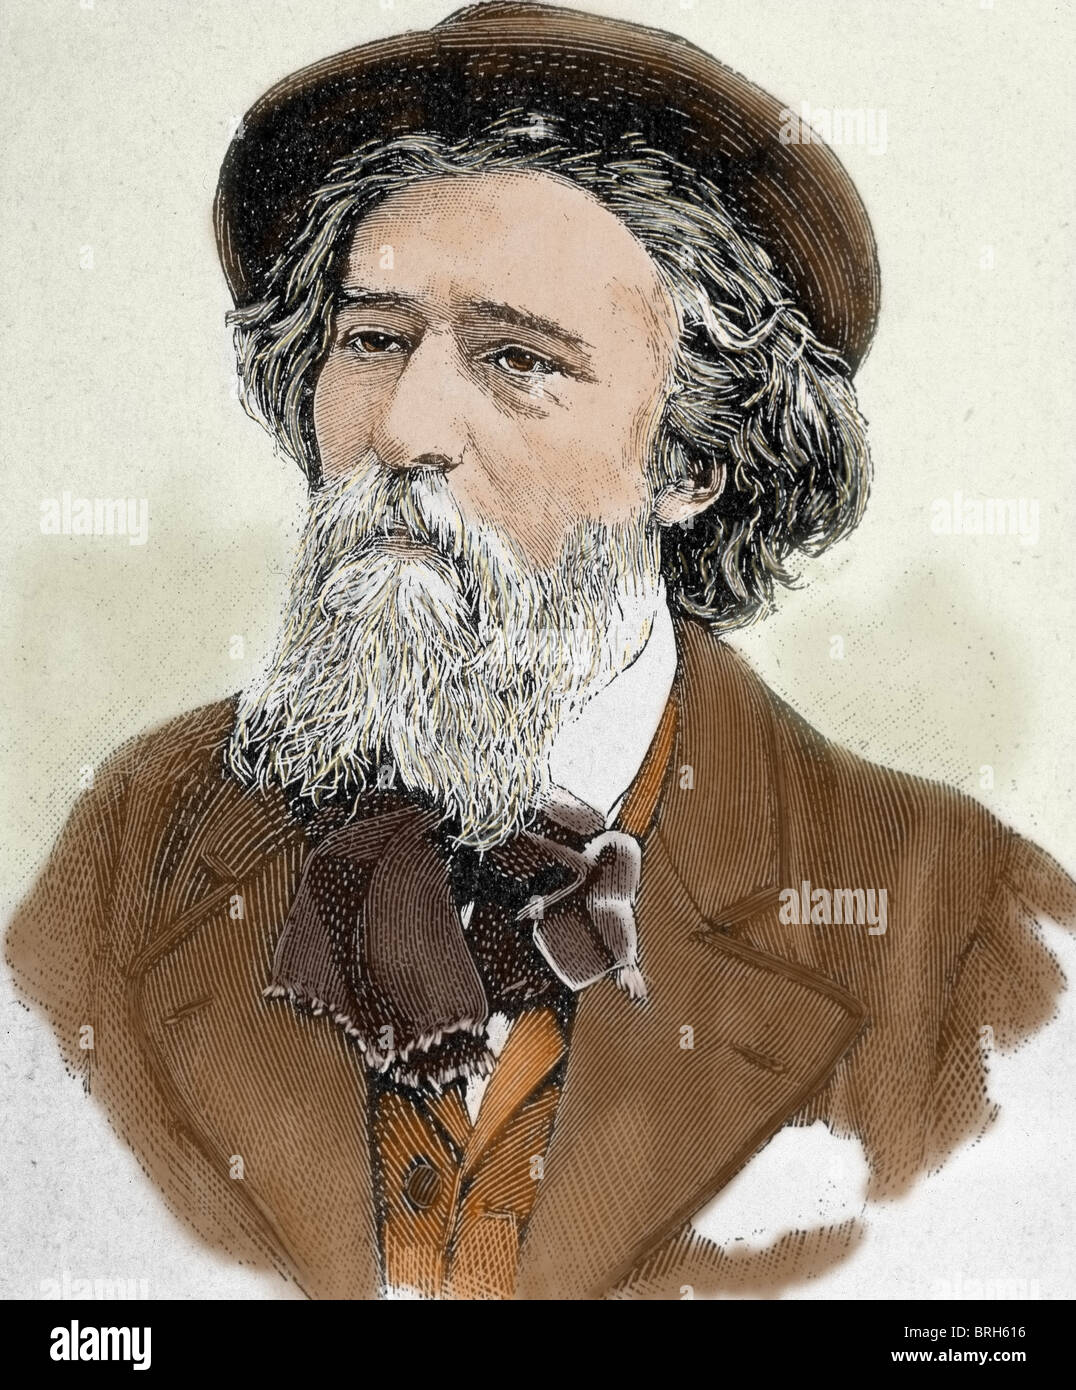 Daudet, Alphonse (1840-1897). French writer. Colored engraving. Stock Photo